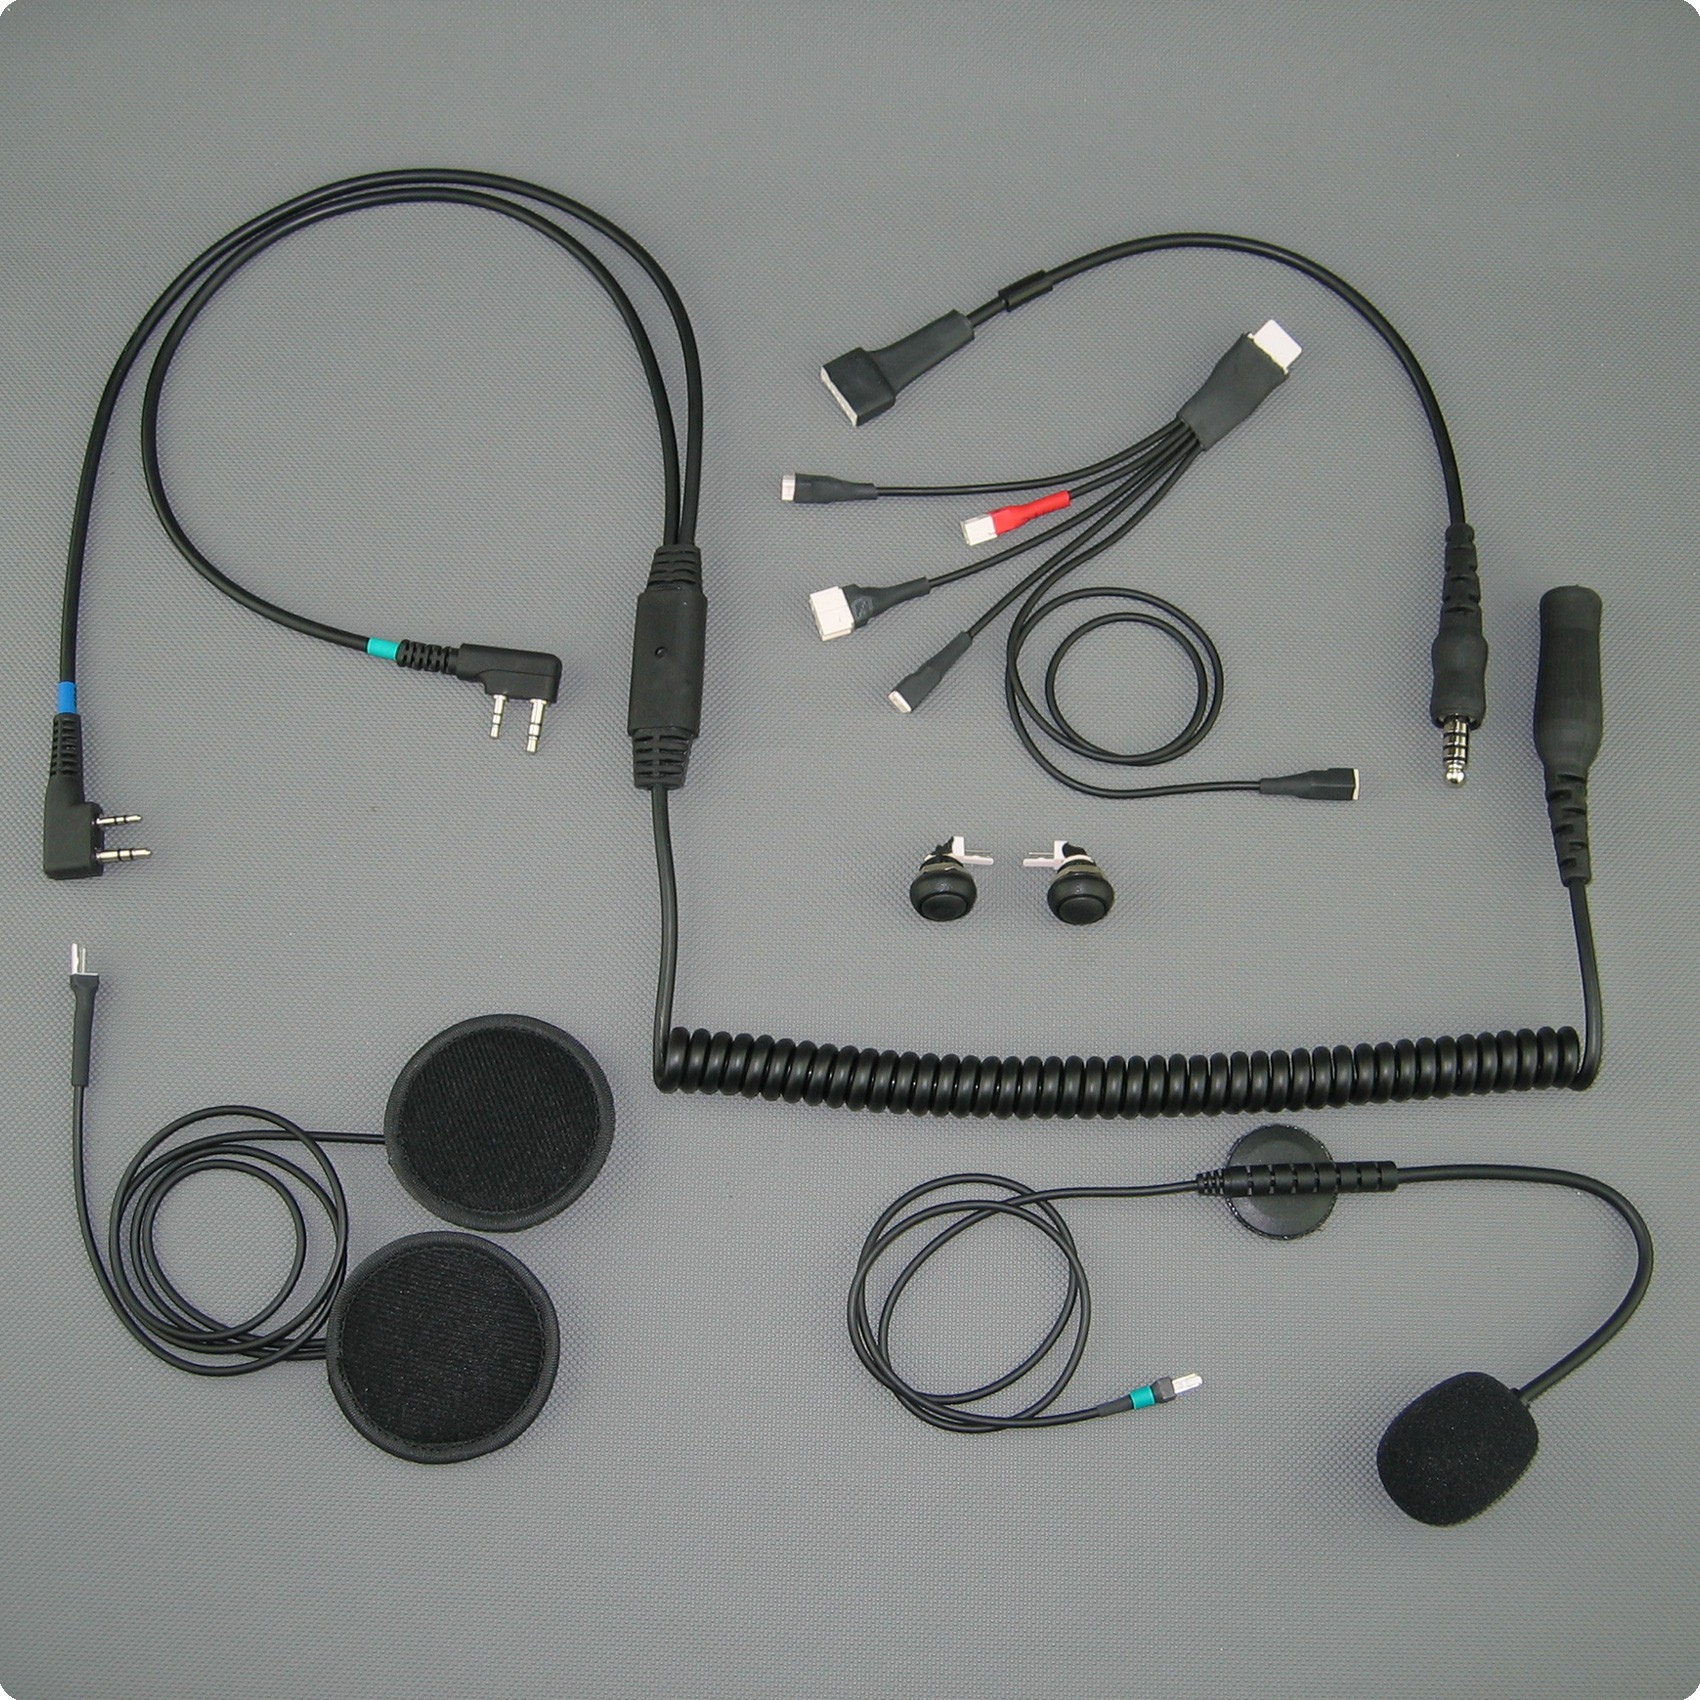  auricular permite el funcionamiento paralelo de la radio aeronáutica DuaIcom y la tecnología de radio Kenwood en un auricular